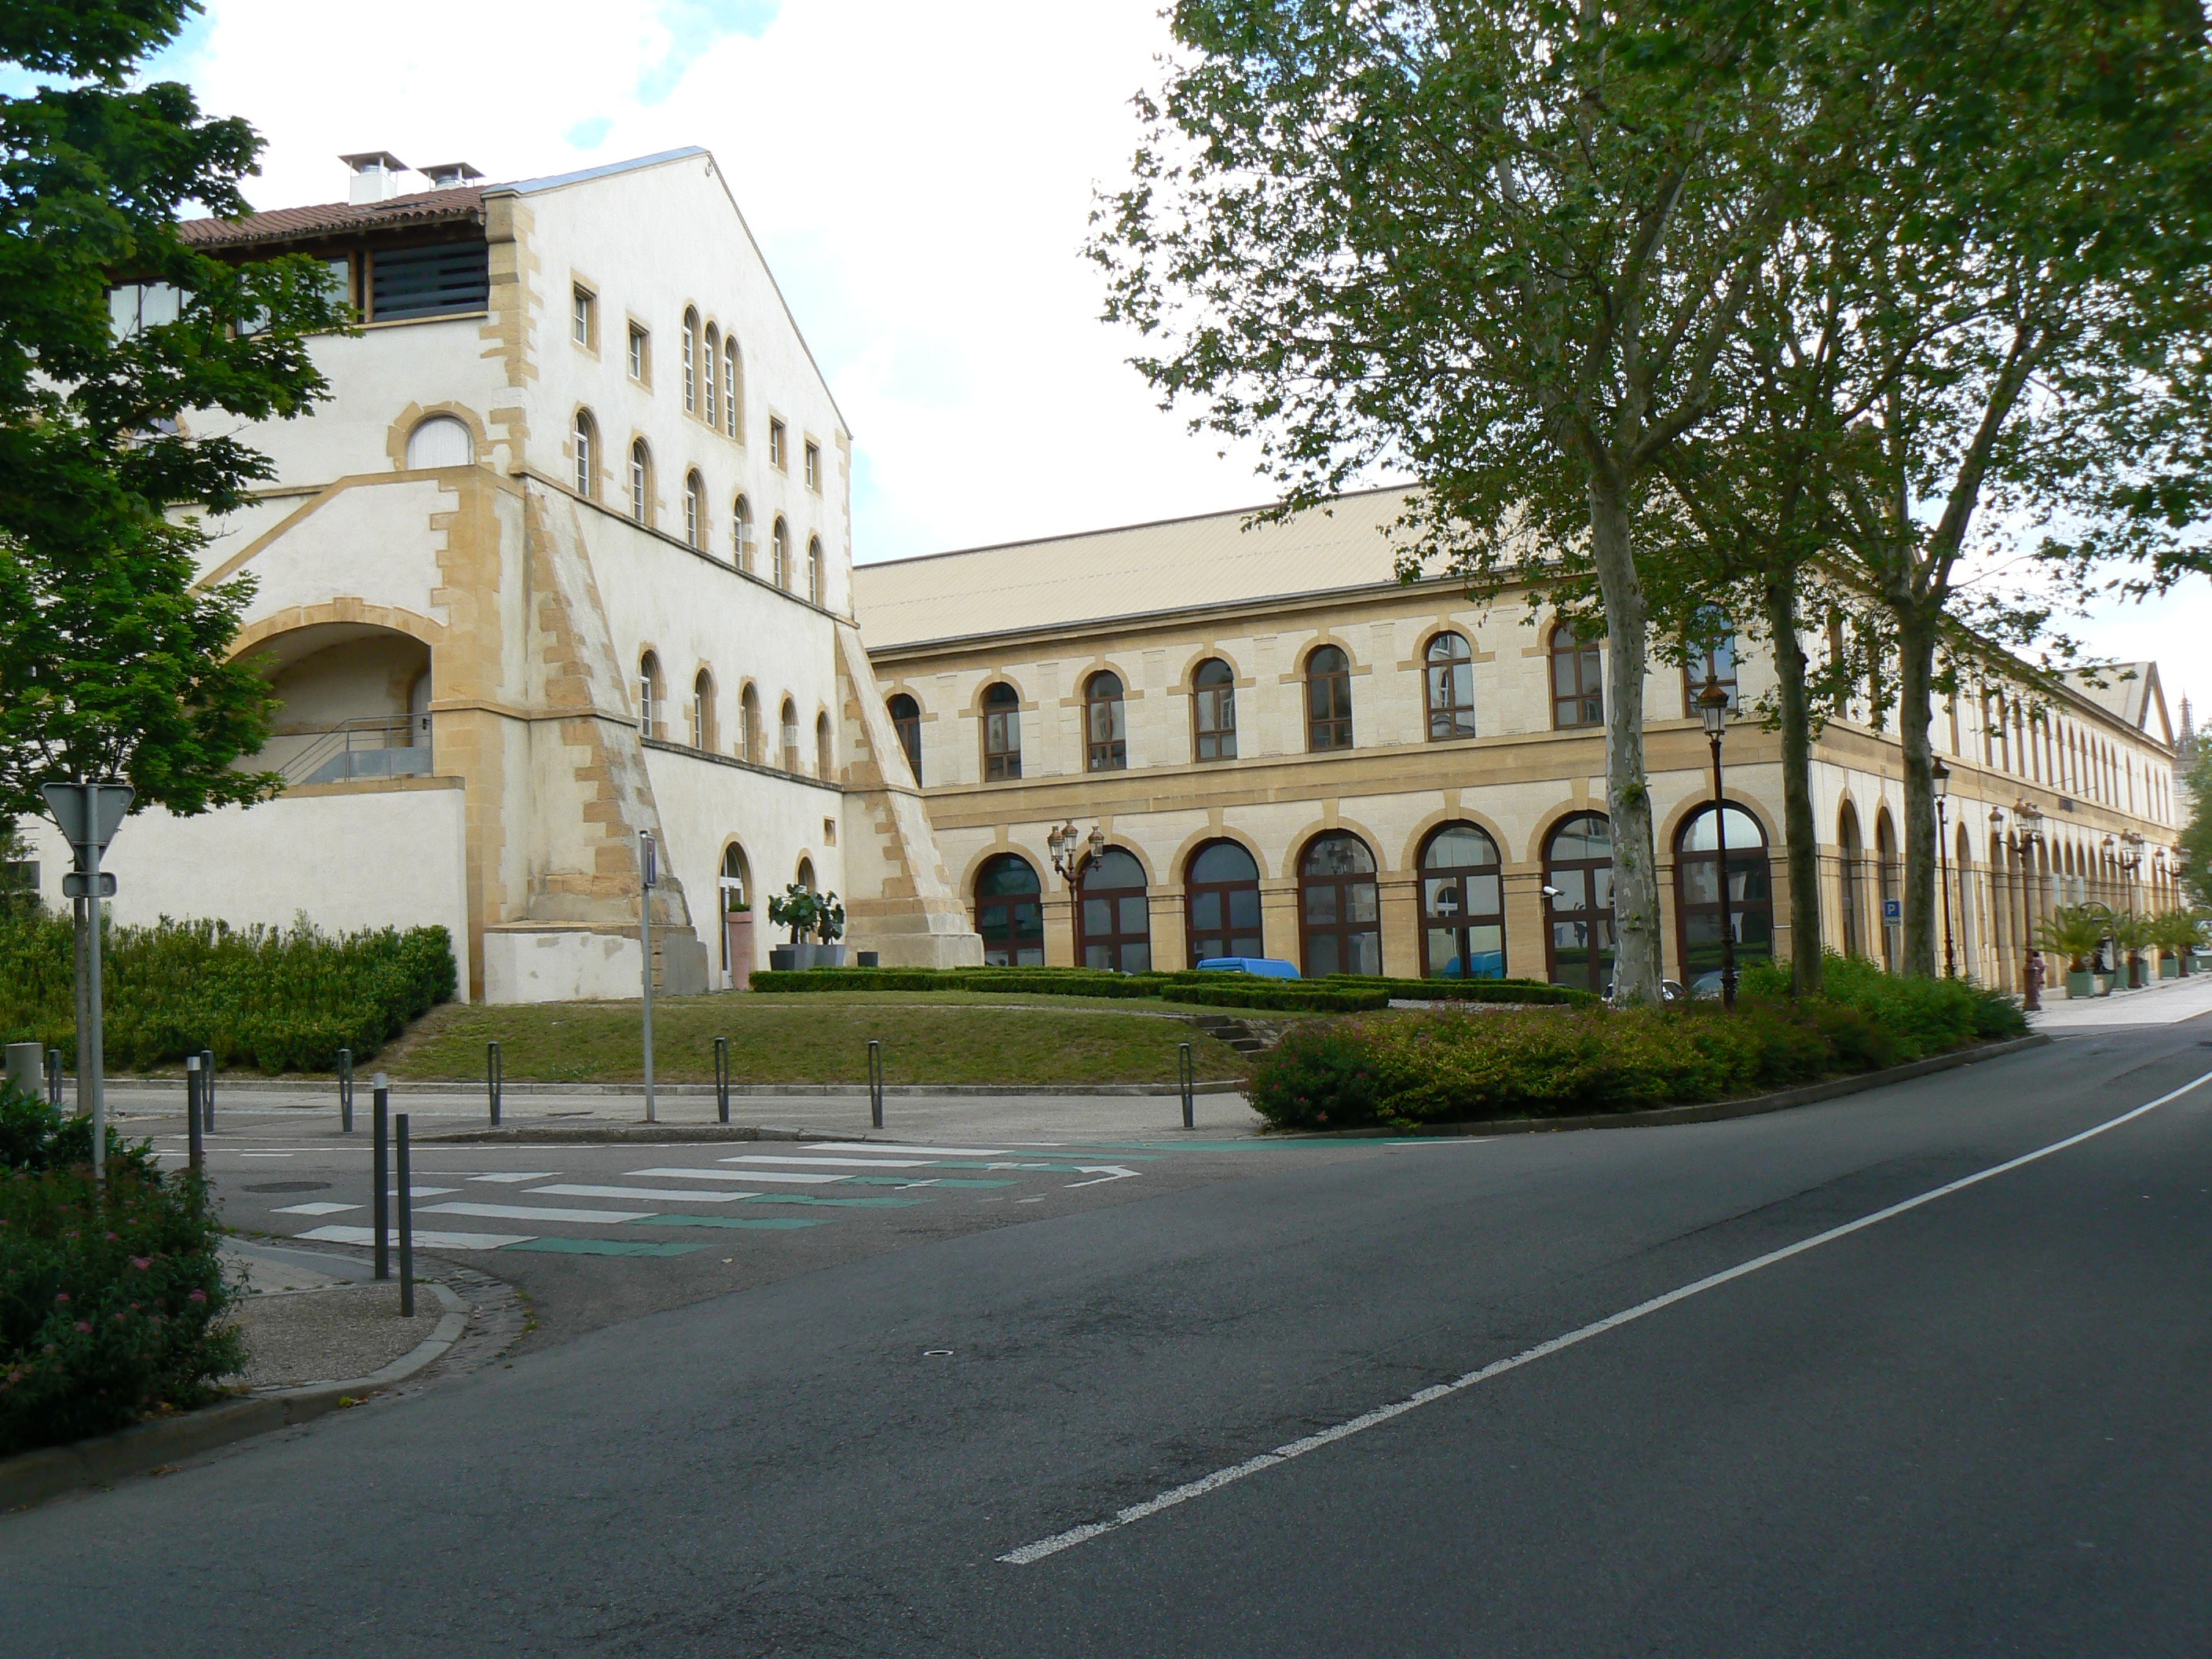 A gauche, l'ancien Magasin aux vivres (1552-60) transformé en hôtel de luxe, à droite, l'ancien Arsenal (1860-1964), transformé par Ricardo Bofill en salle de concert. (c) JM Holz